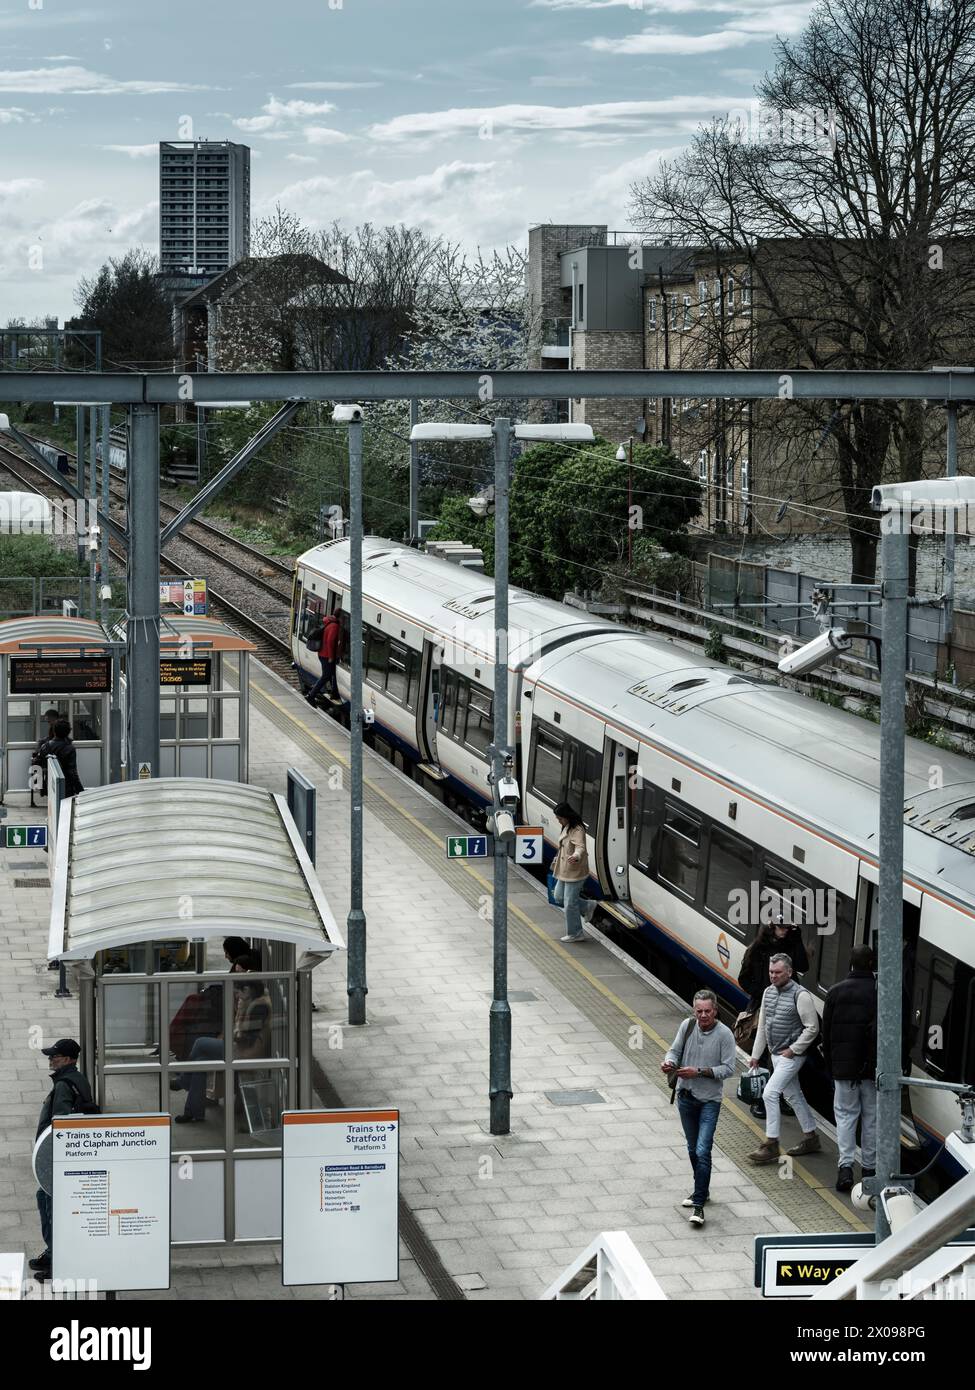 La gare Caledonian Road and Barnsbury est située dans le quartier londonien d'Islington, au nord de Londres. La gare se trouve sur le North London Lin Banque D'Images